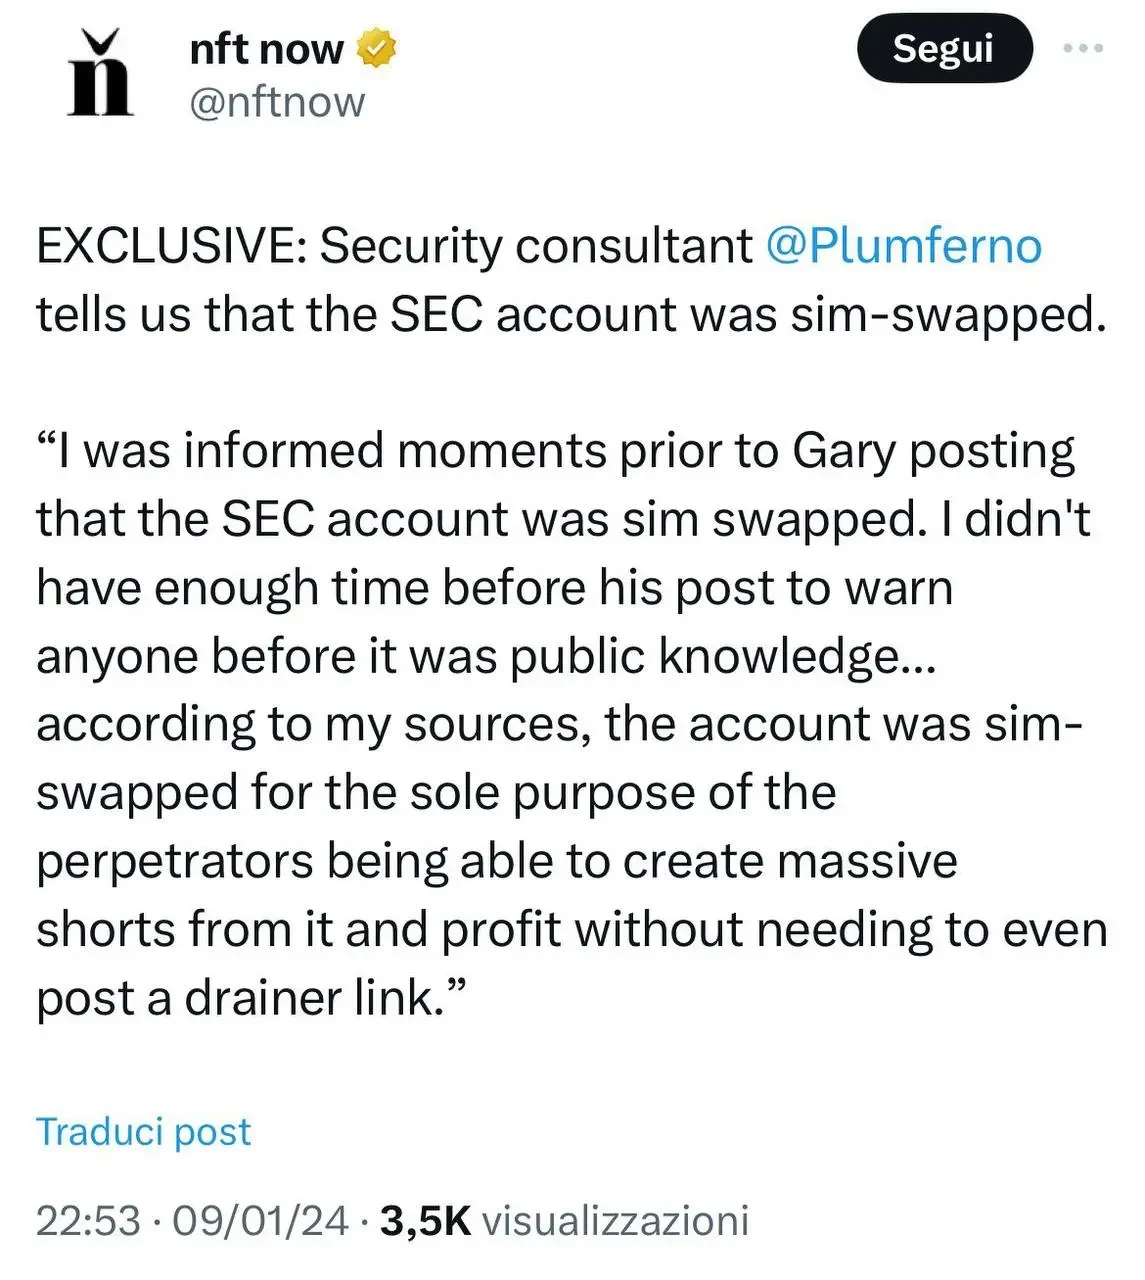 Attacco Sim Swap all'account Twitter della SEC?